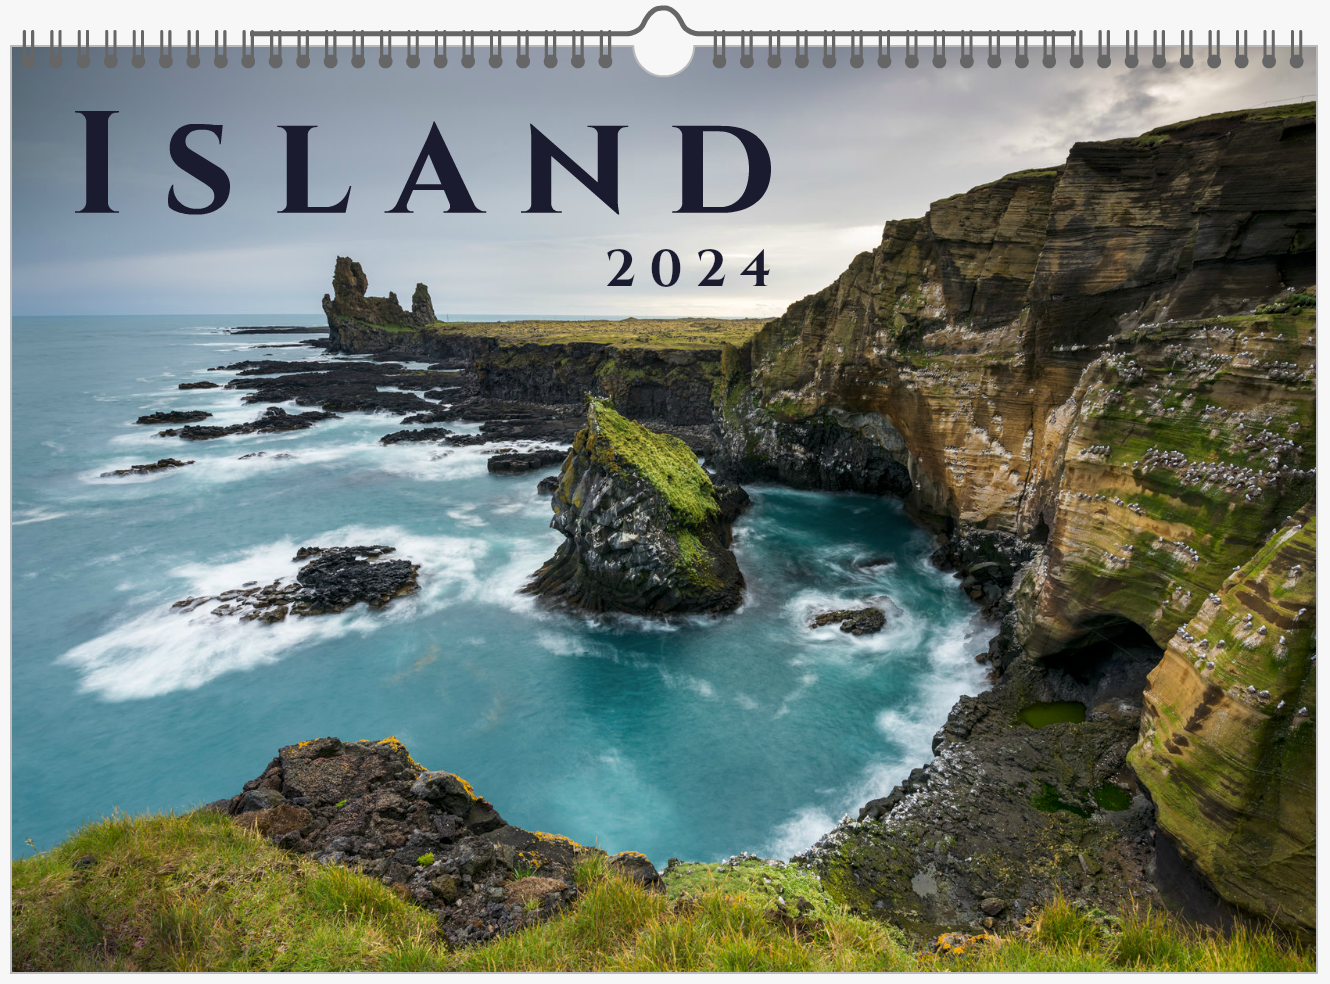 Landschaftsfotokalender von Island Titelbild - Felsen mit Küstenlandschaft